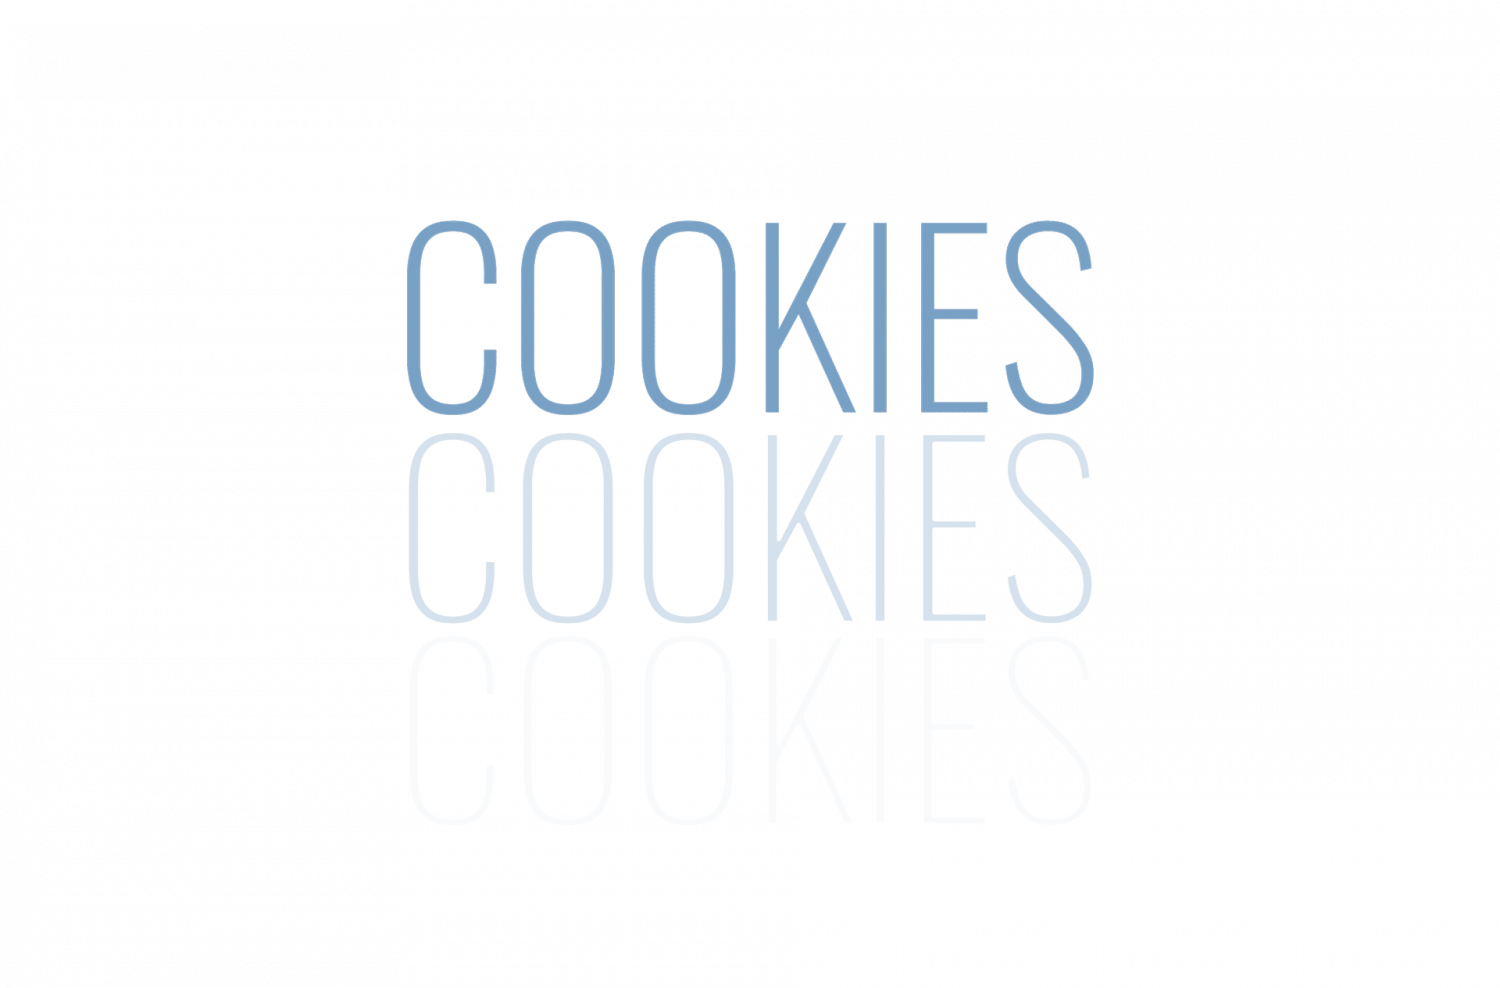 Cookies als Text